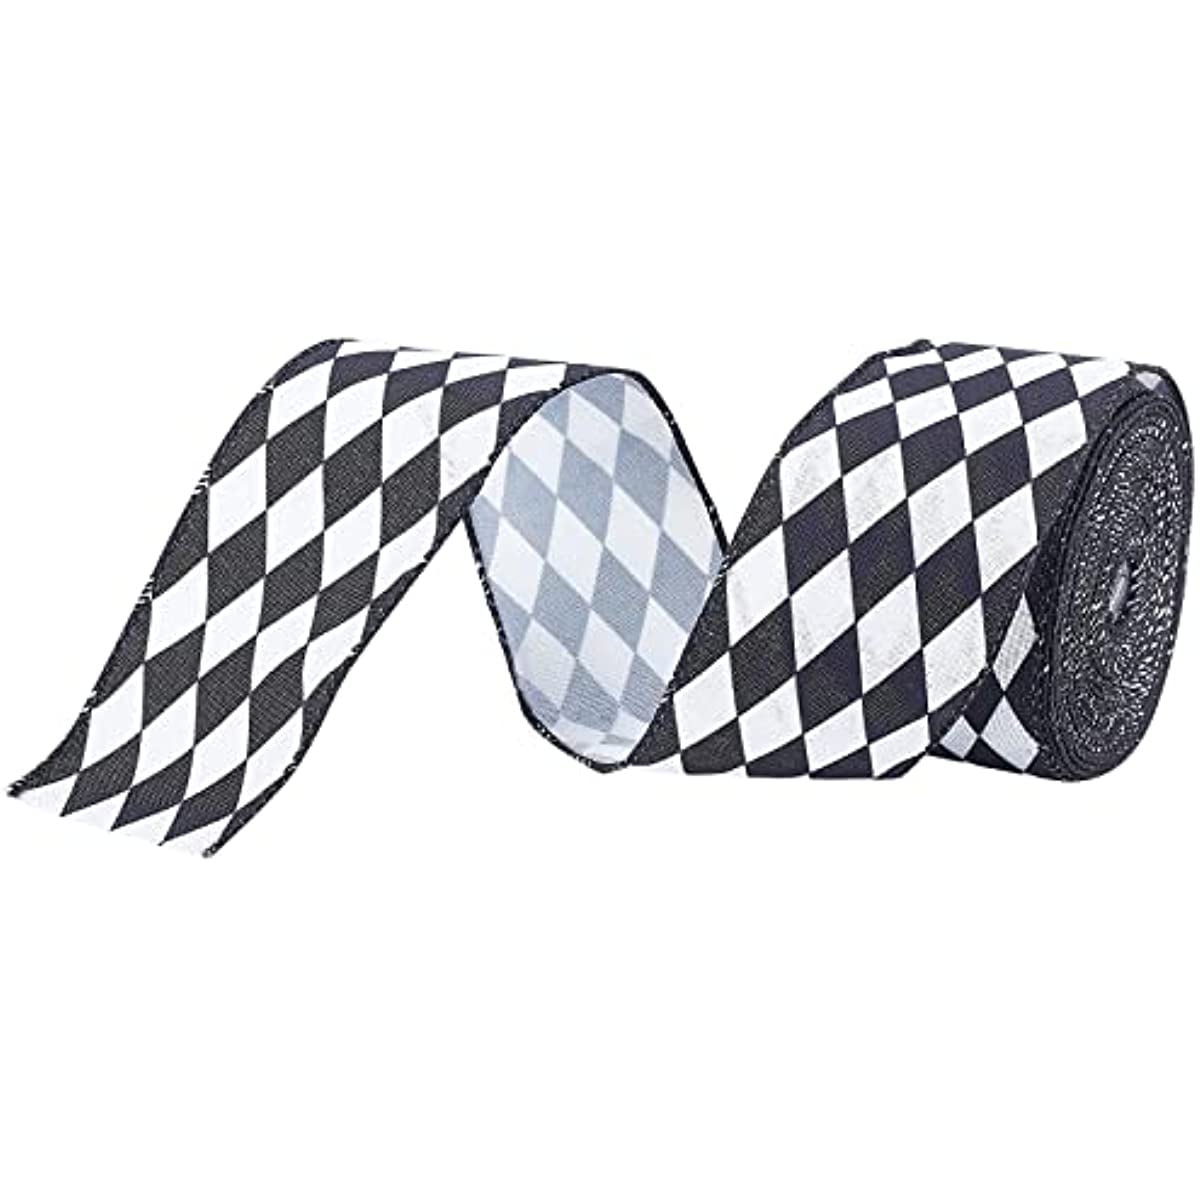 Thin Checkered Ribbon Blck/Wht